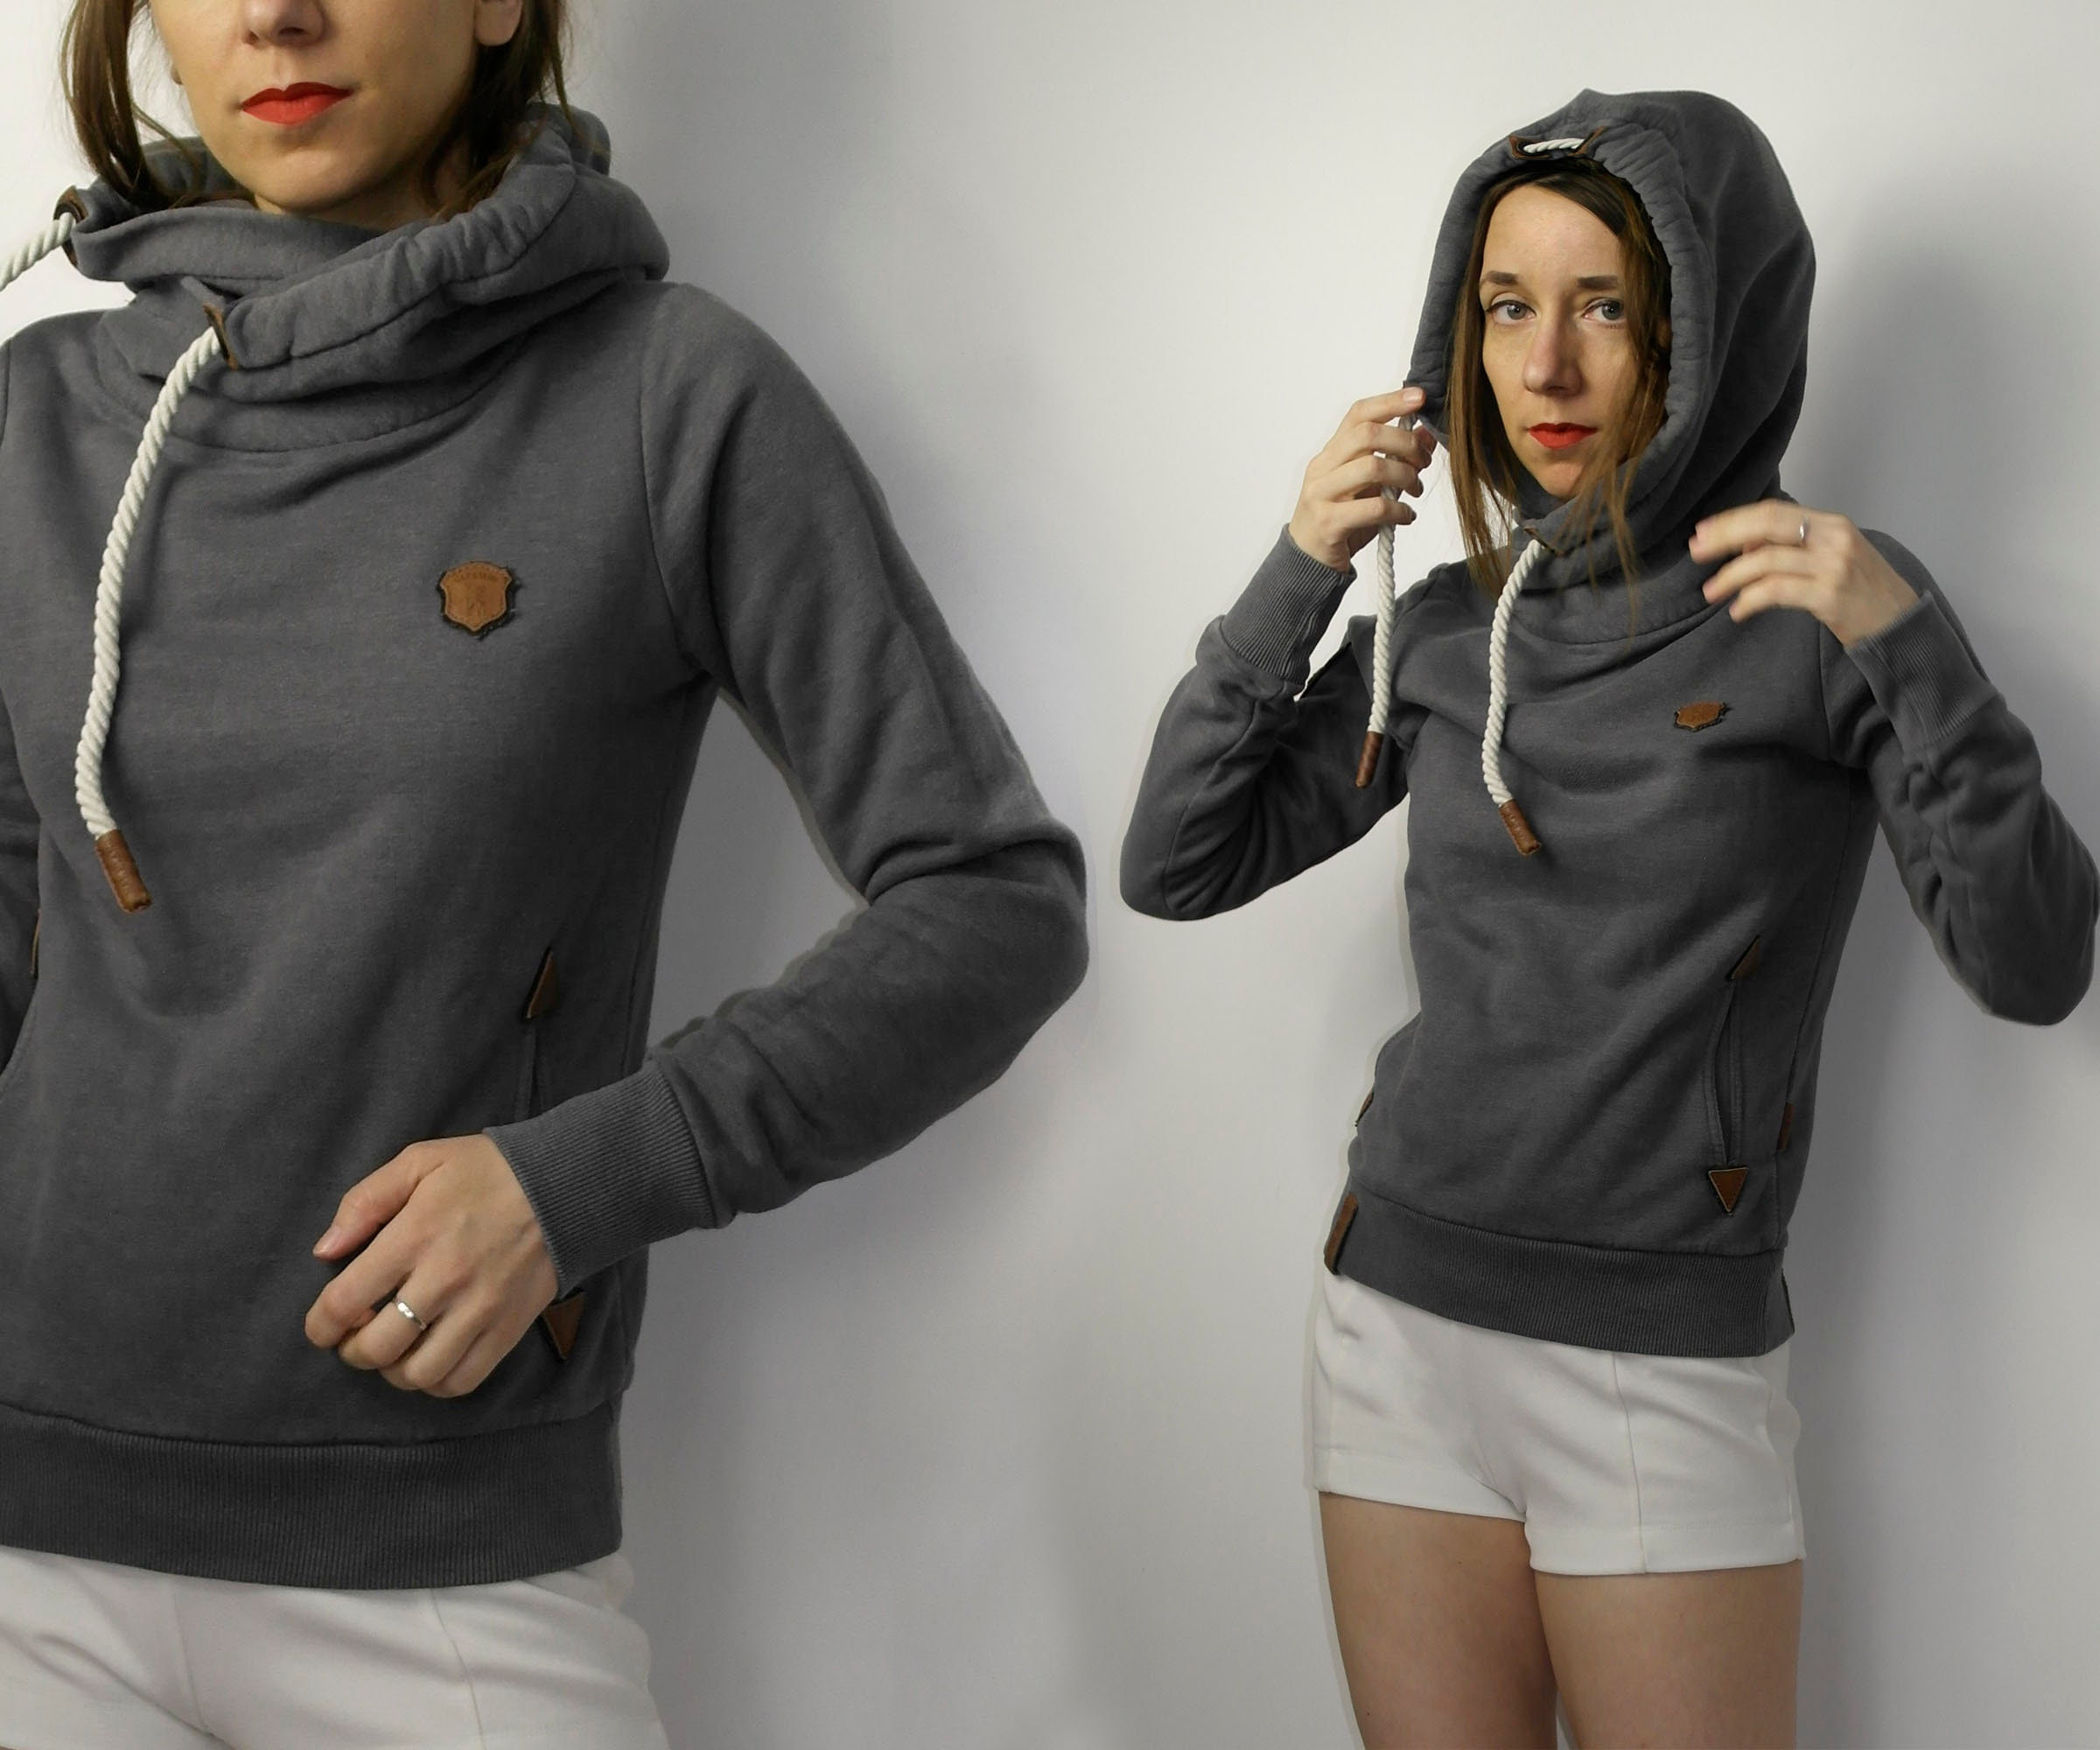 Enten merknaam Aantrekkelijk zijn aantrekkelijk Naketano grijs grijs hoodie sweatshirt maat S - Etsy Nederland